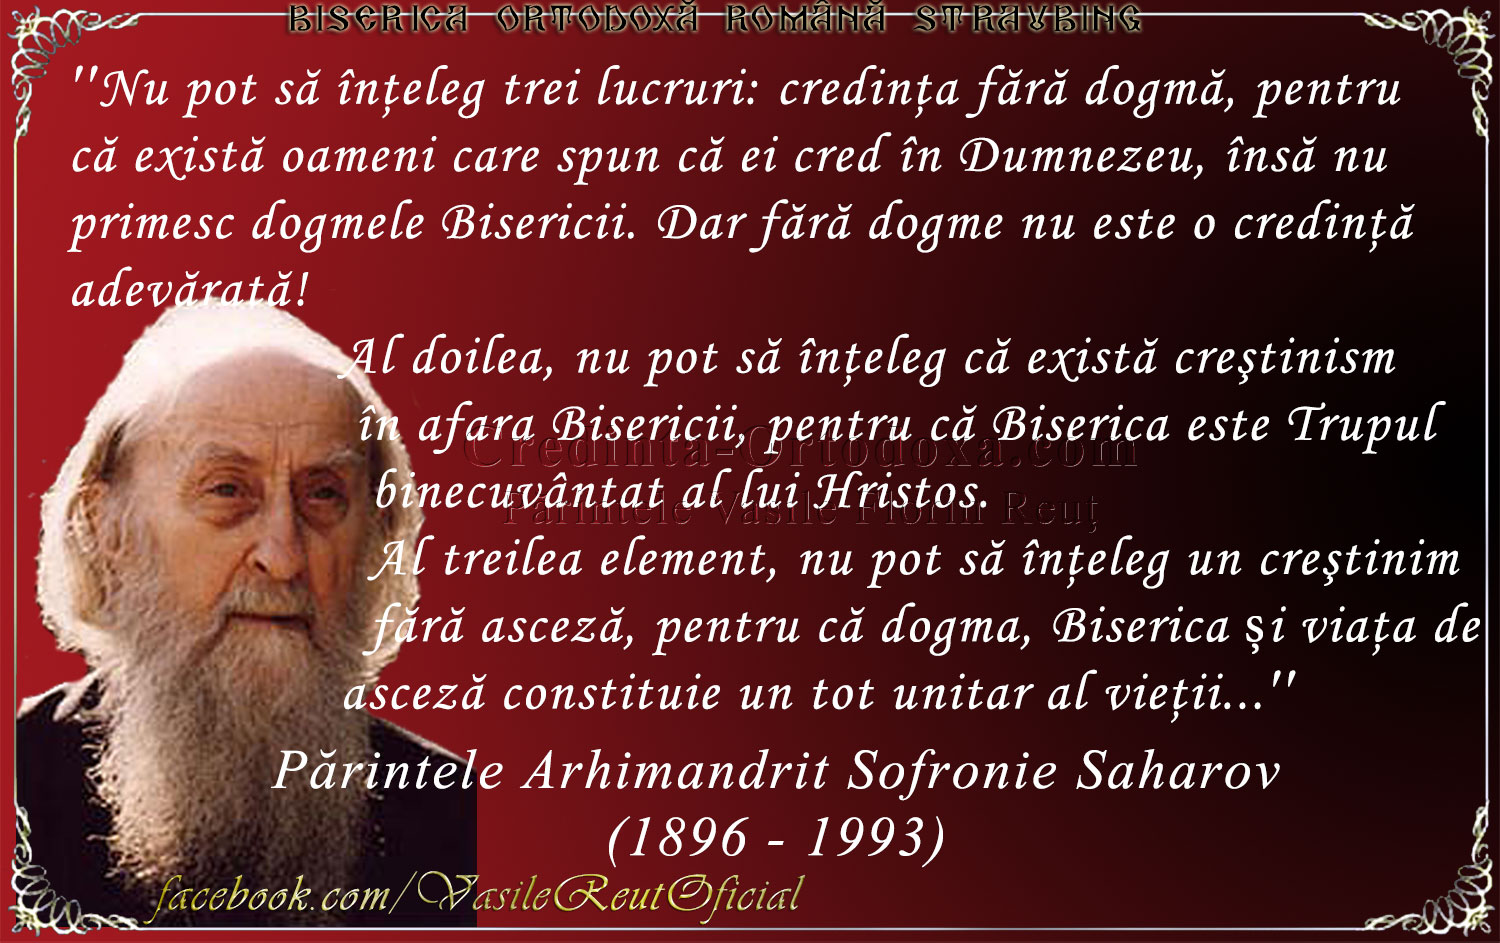 Părintele Arhimandrit Sofronie Saharov